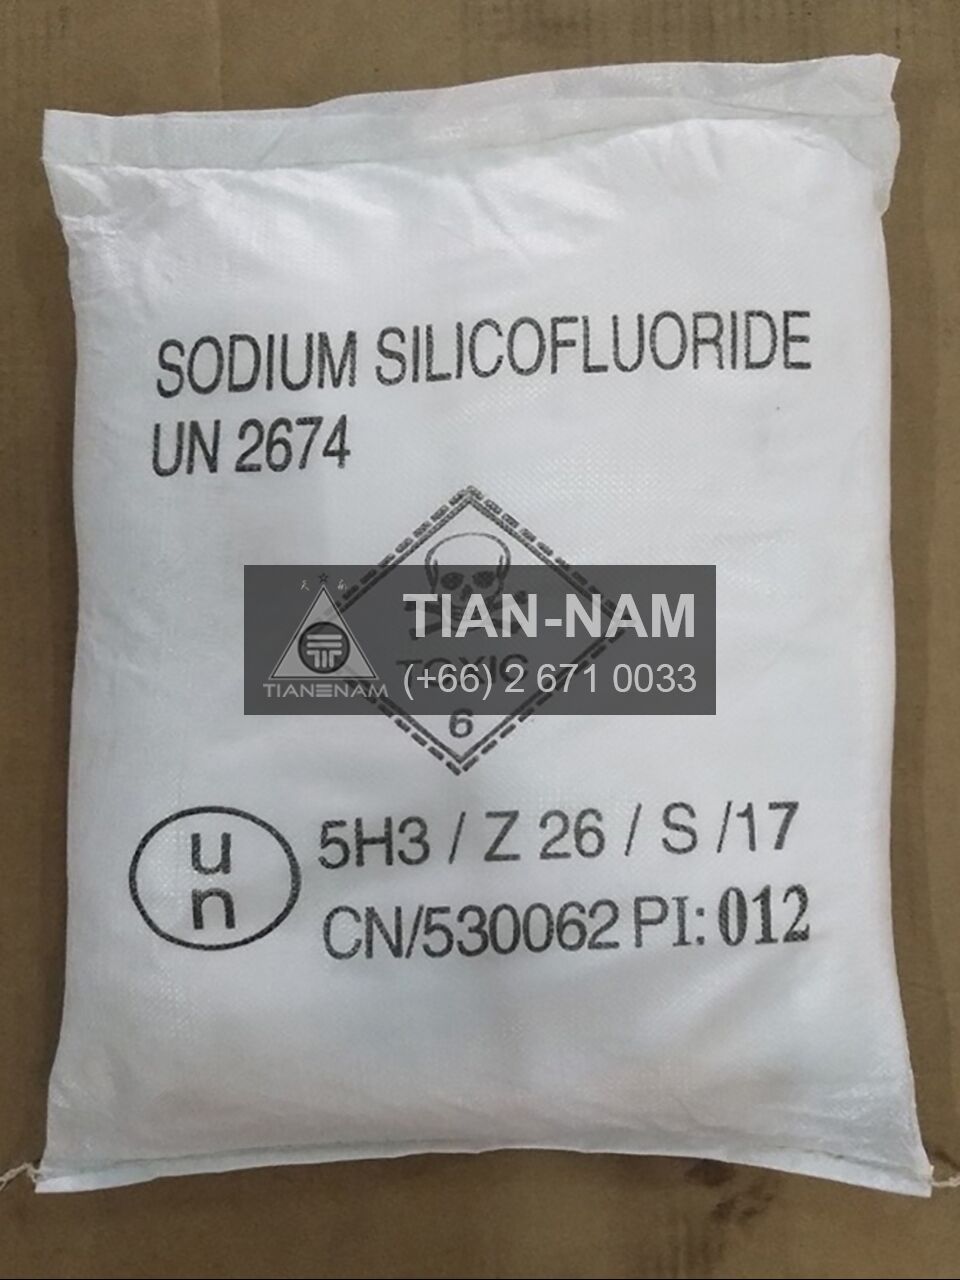 Sodium Silicofluoride China โซเดียม ซิลิโคฟลูออไรด์ จีน